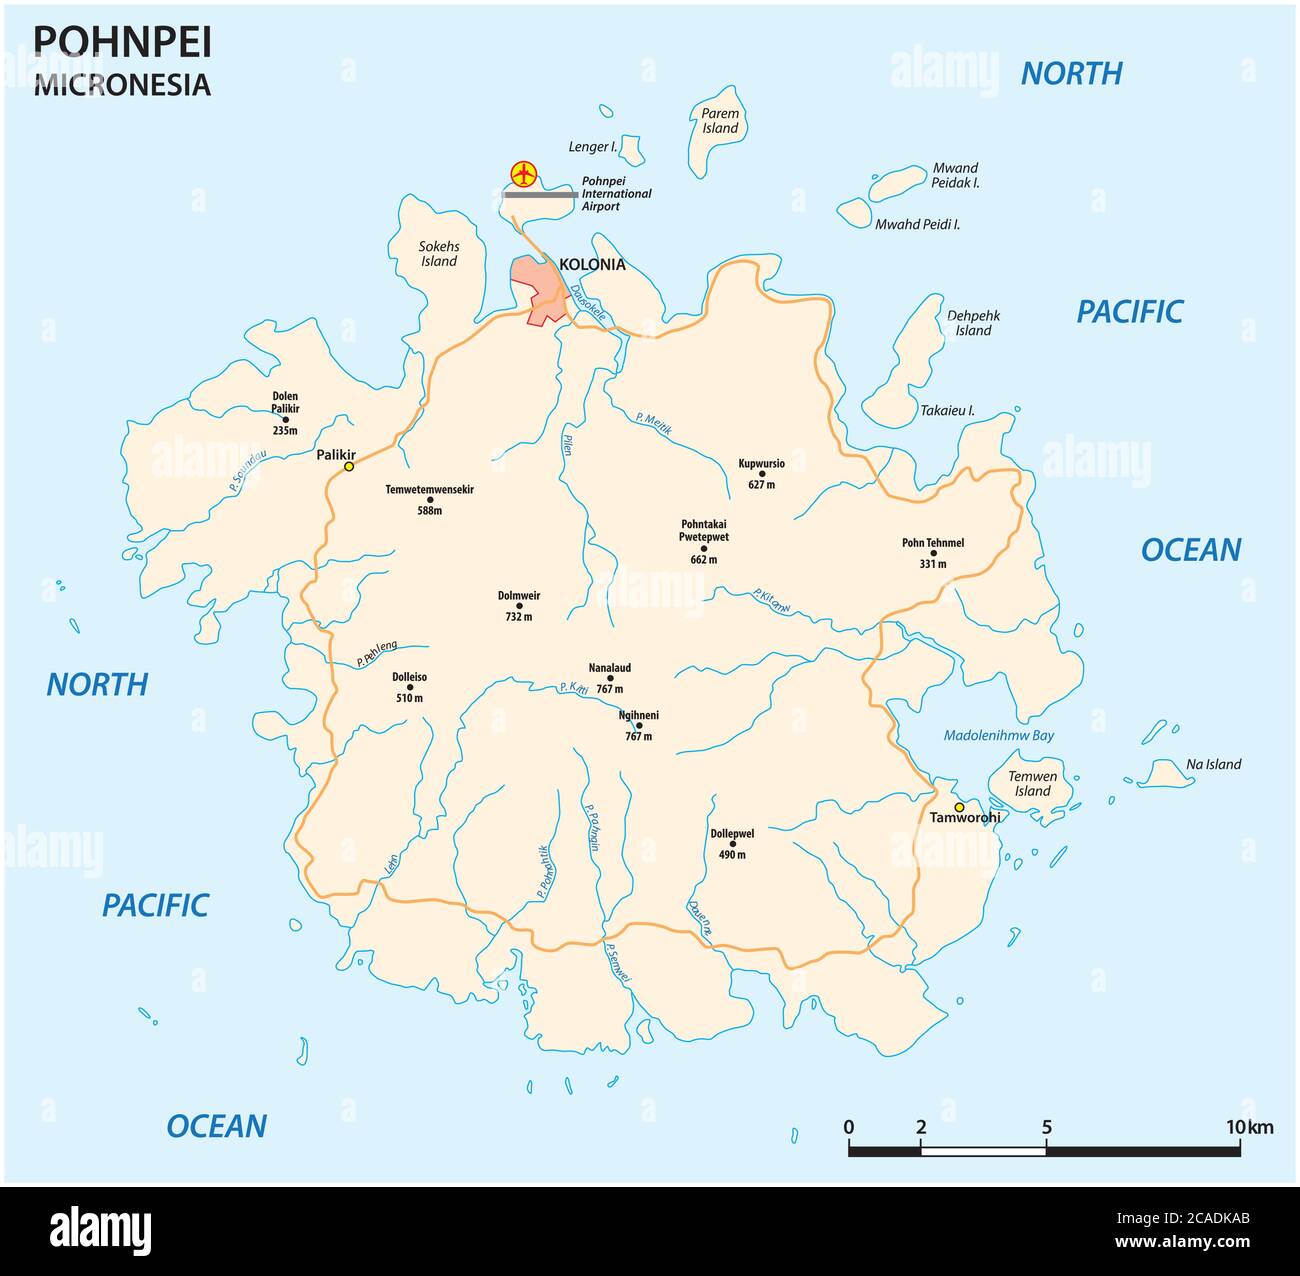 Mappa stradale vettoriale della principale isola micronesiana di Pohnpei Illustrazione Vettoriale